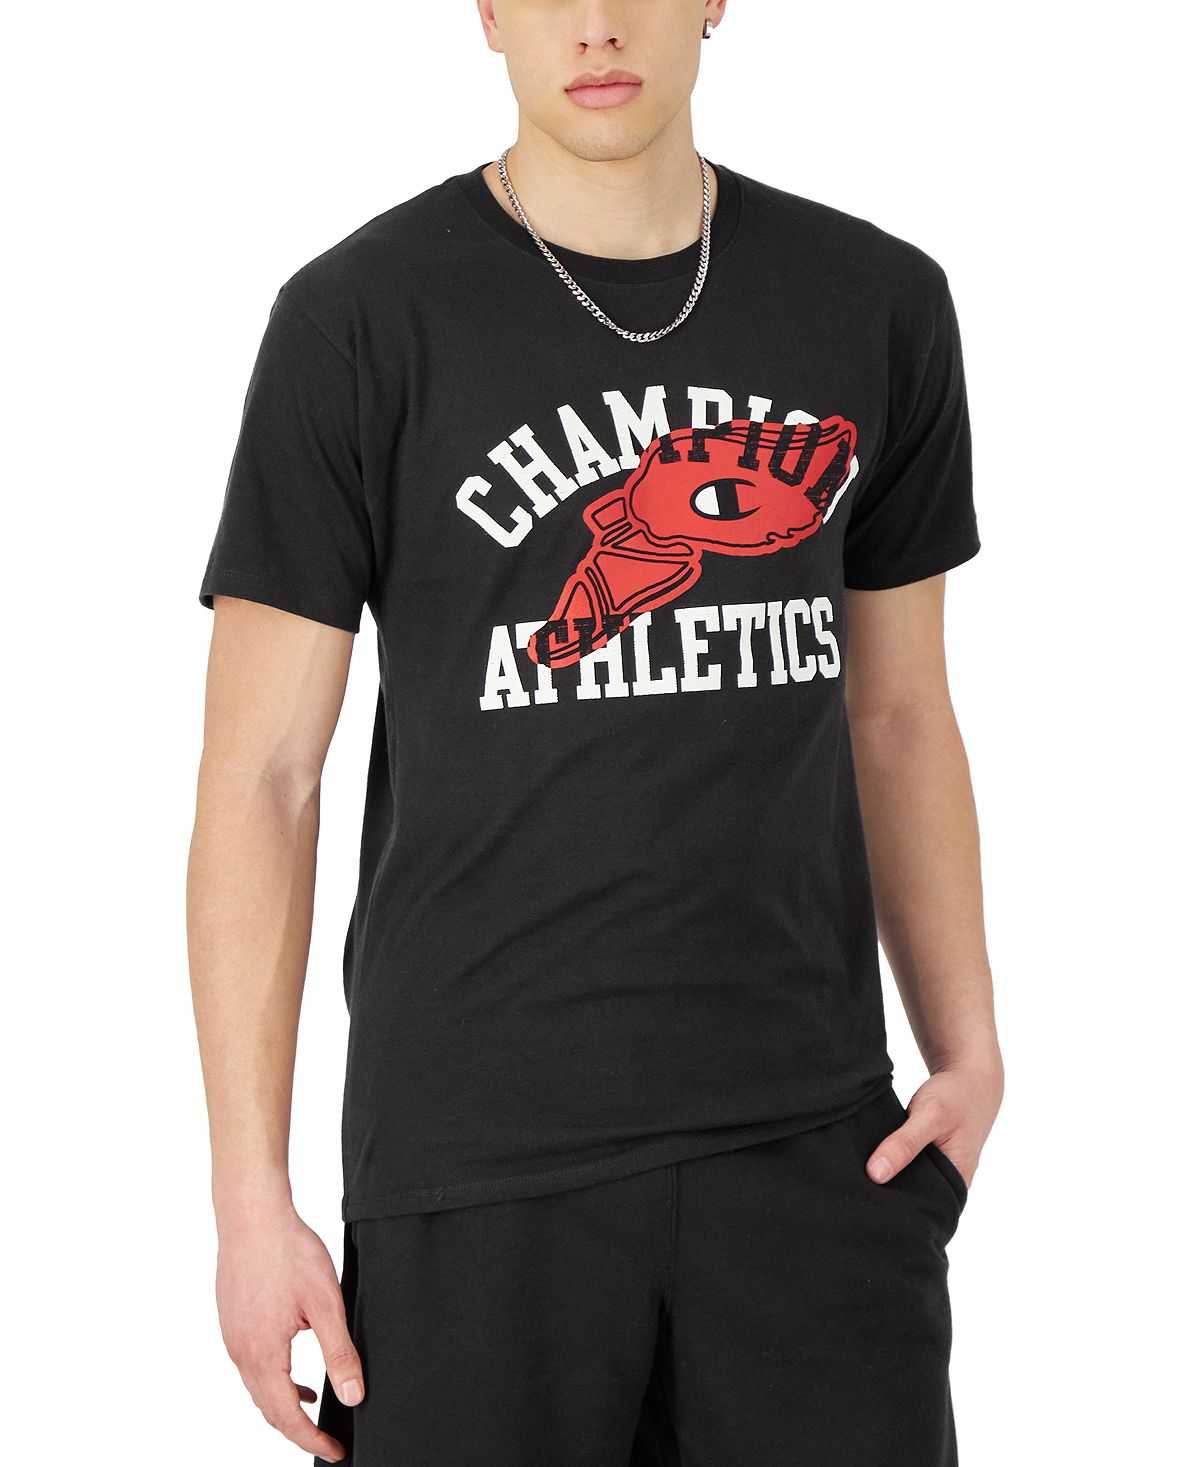 цена Мужская классическая футболка с графическим логотипом Champion